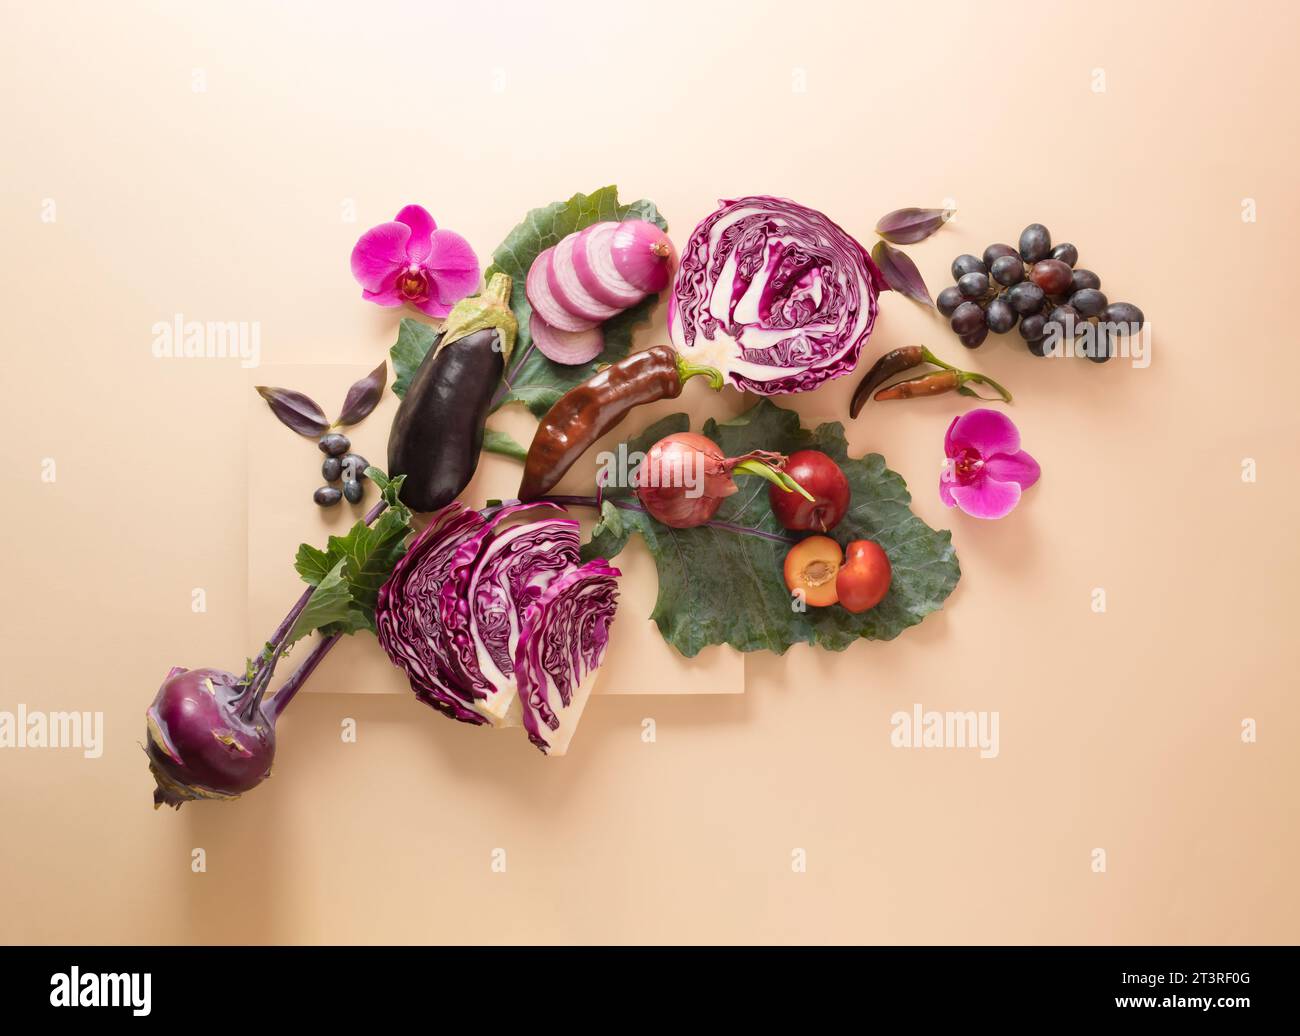 Verdure biologiche viola sane. Concept creativo minimalista dall'alto. Spianatura piatta Foto Stock